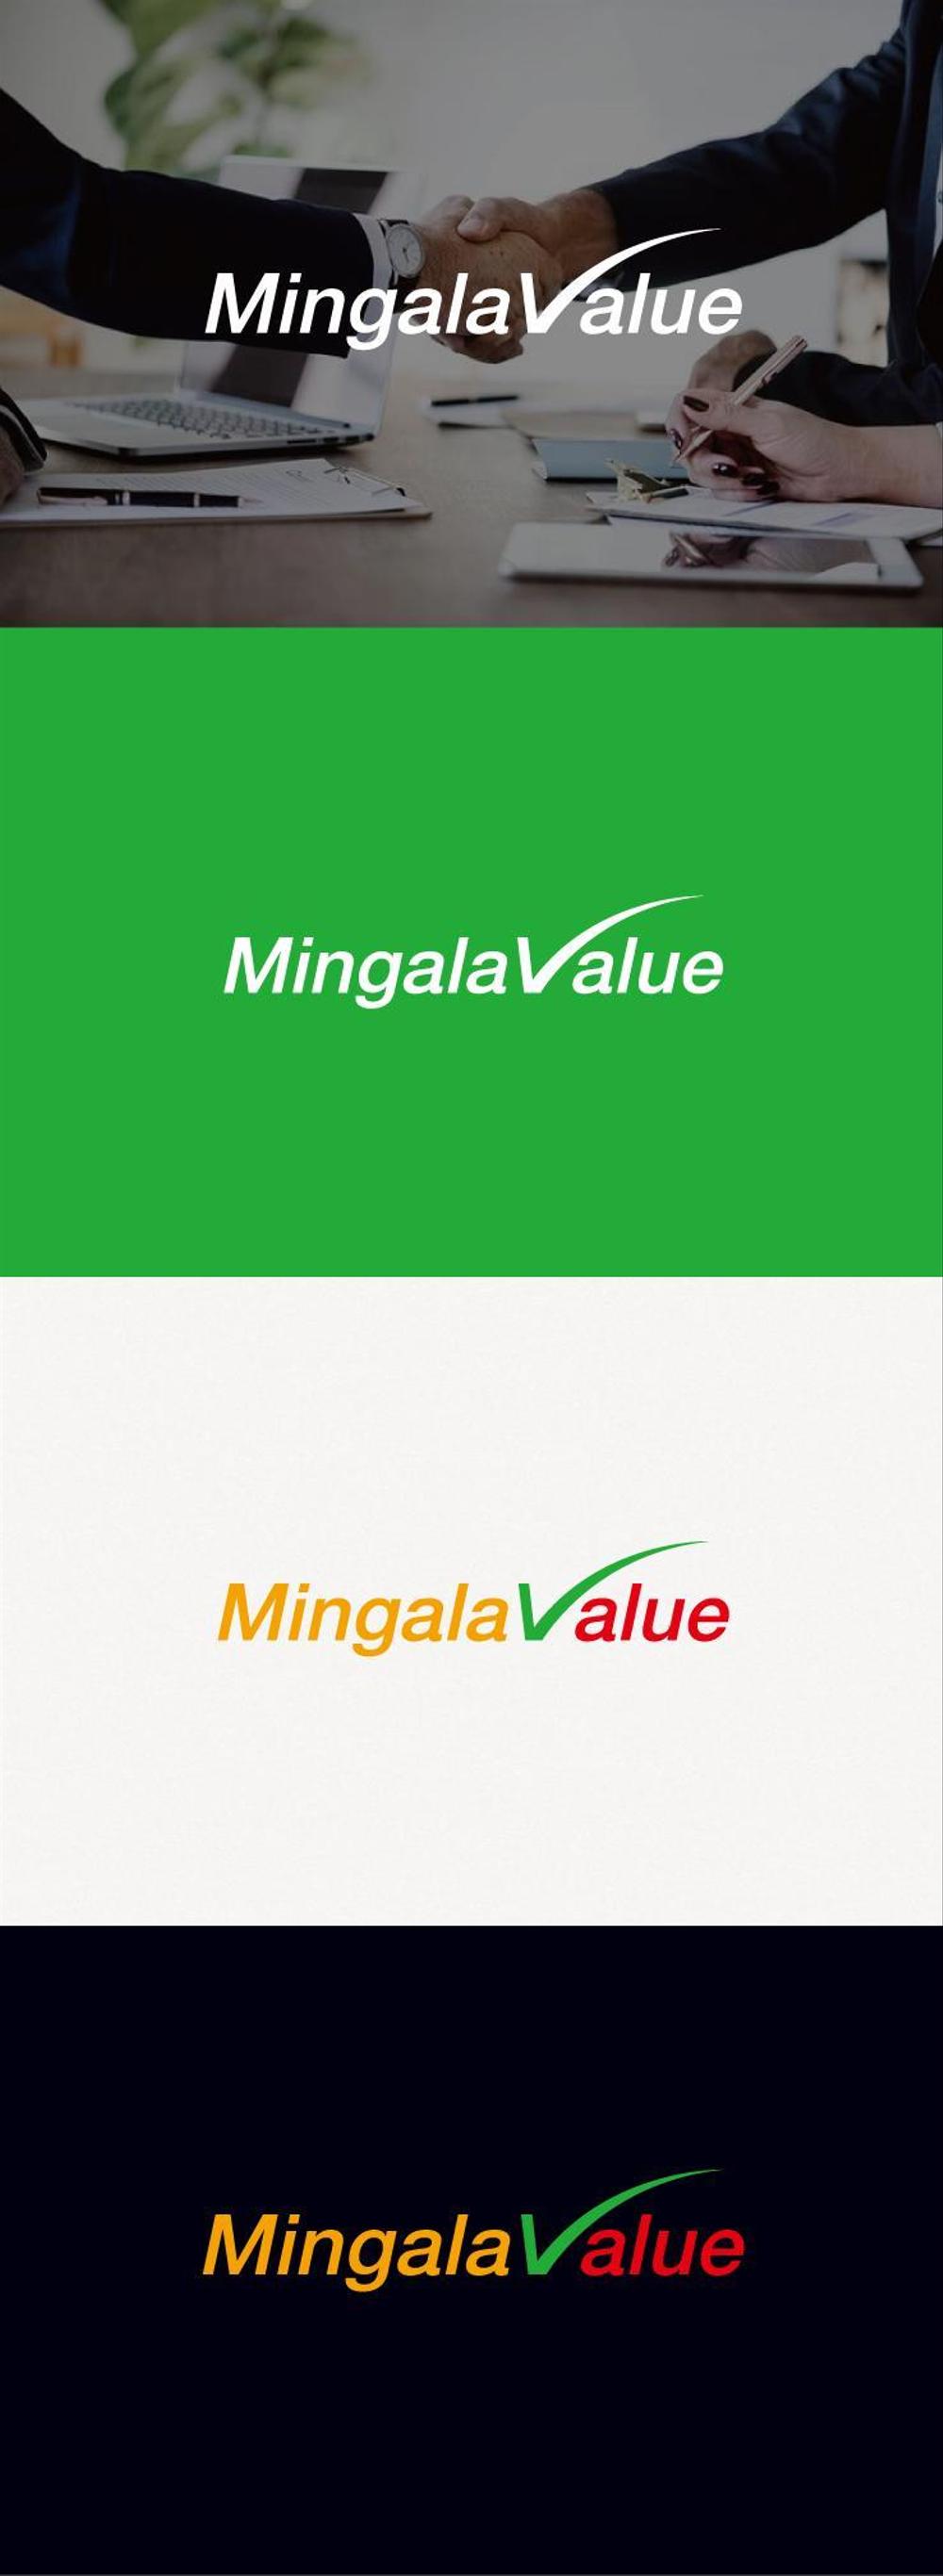 在日ミャンマー人材向け求人サイト「MingalaValue（ミンガラバリュ）」のロゴ作成